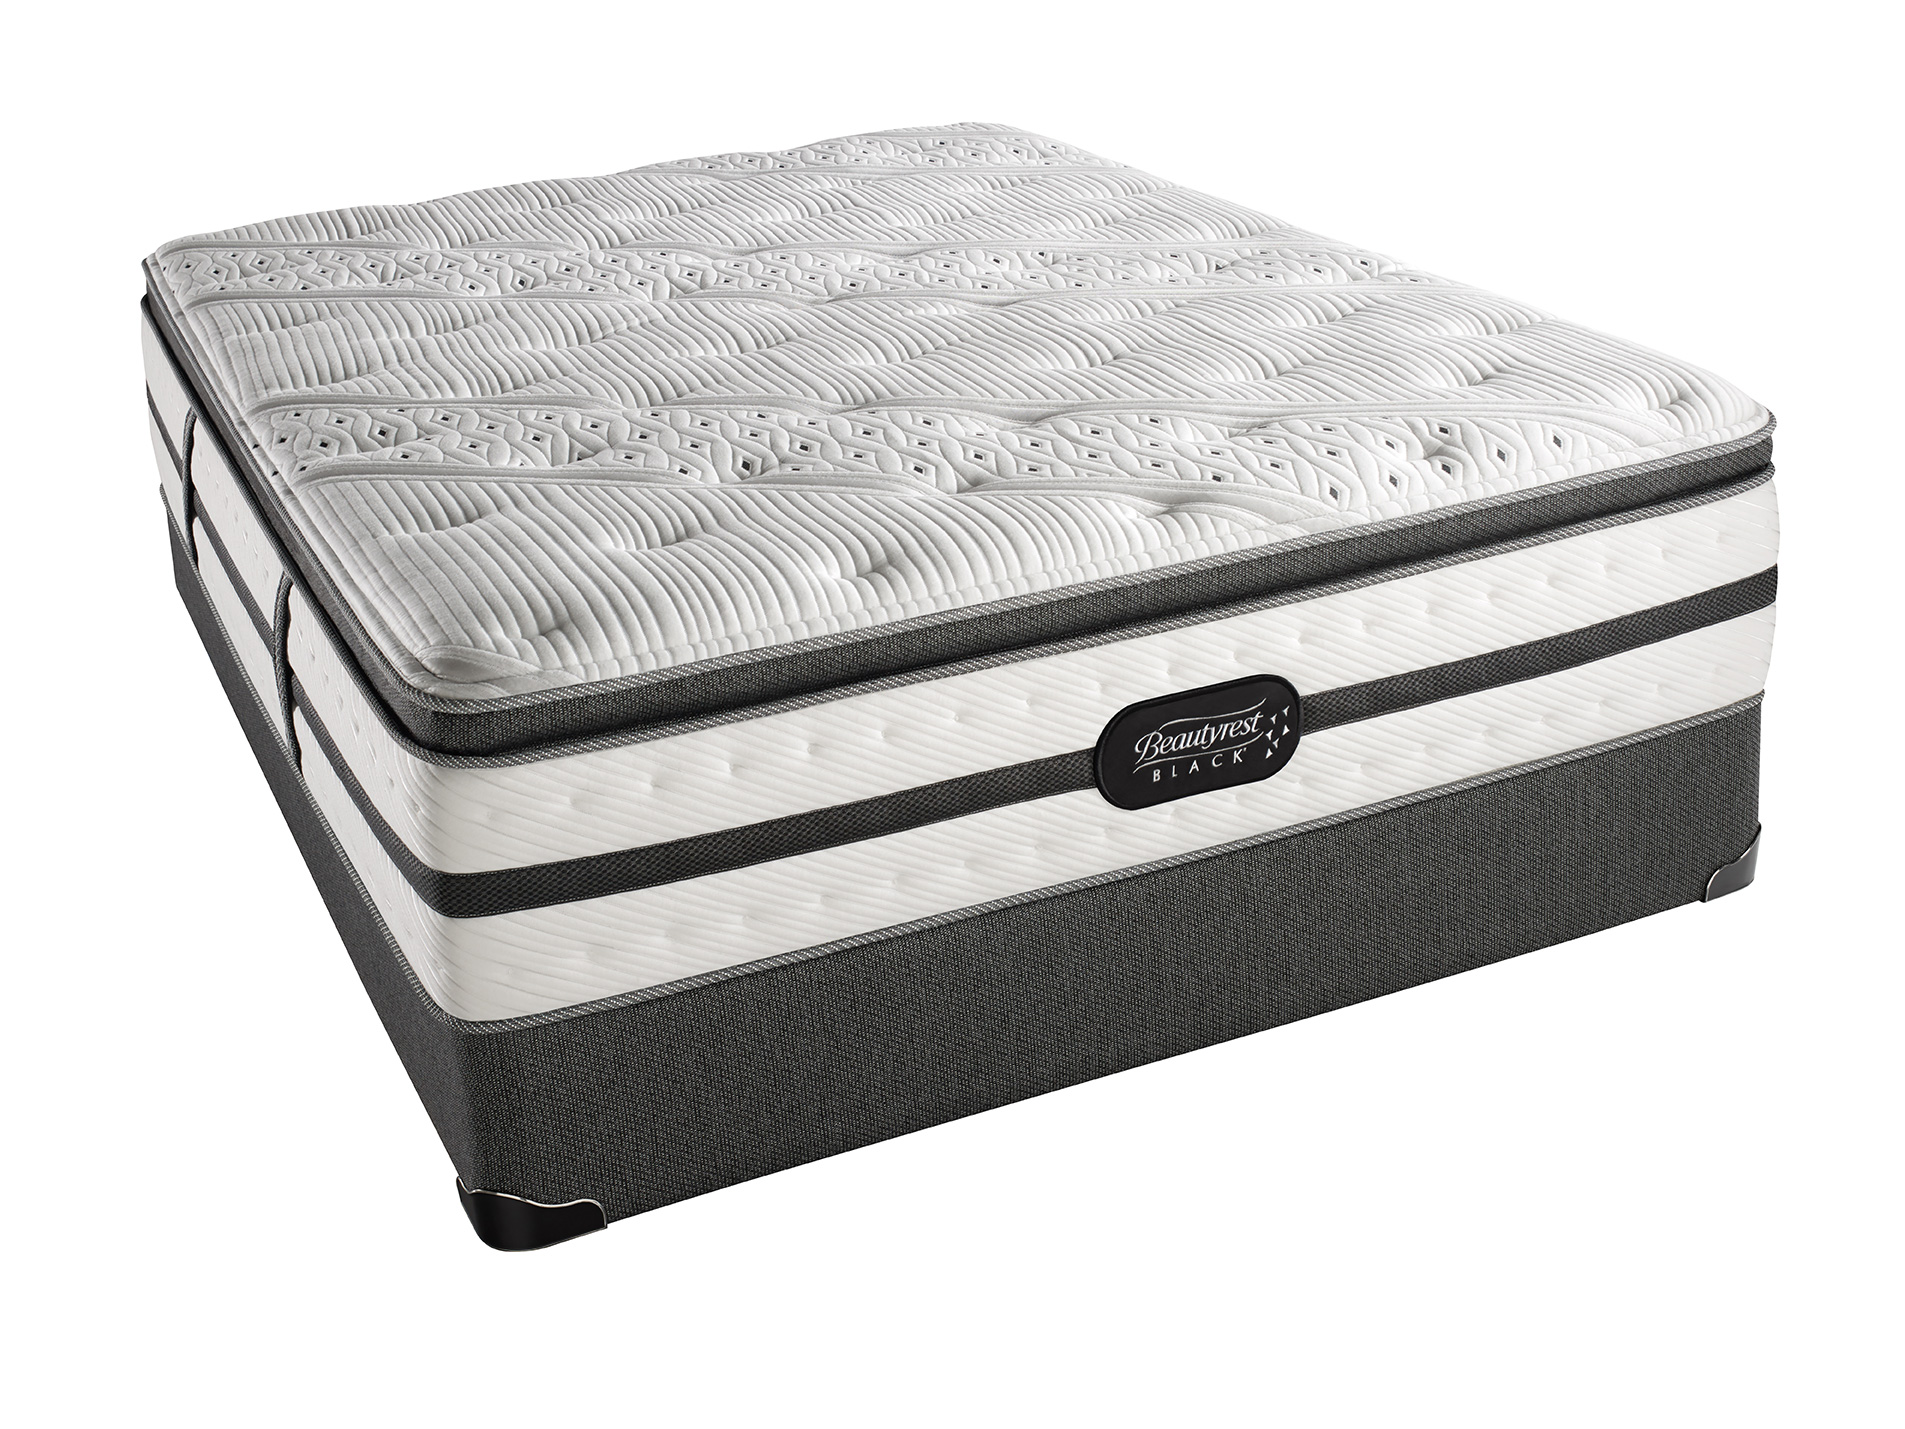 simmons healthsmart beautyrest pillow top mattress